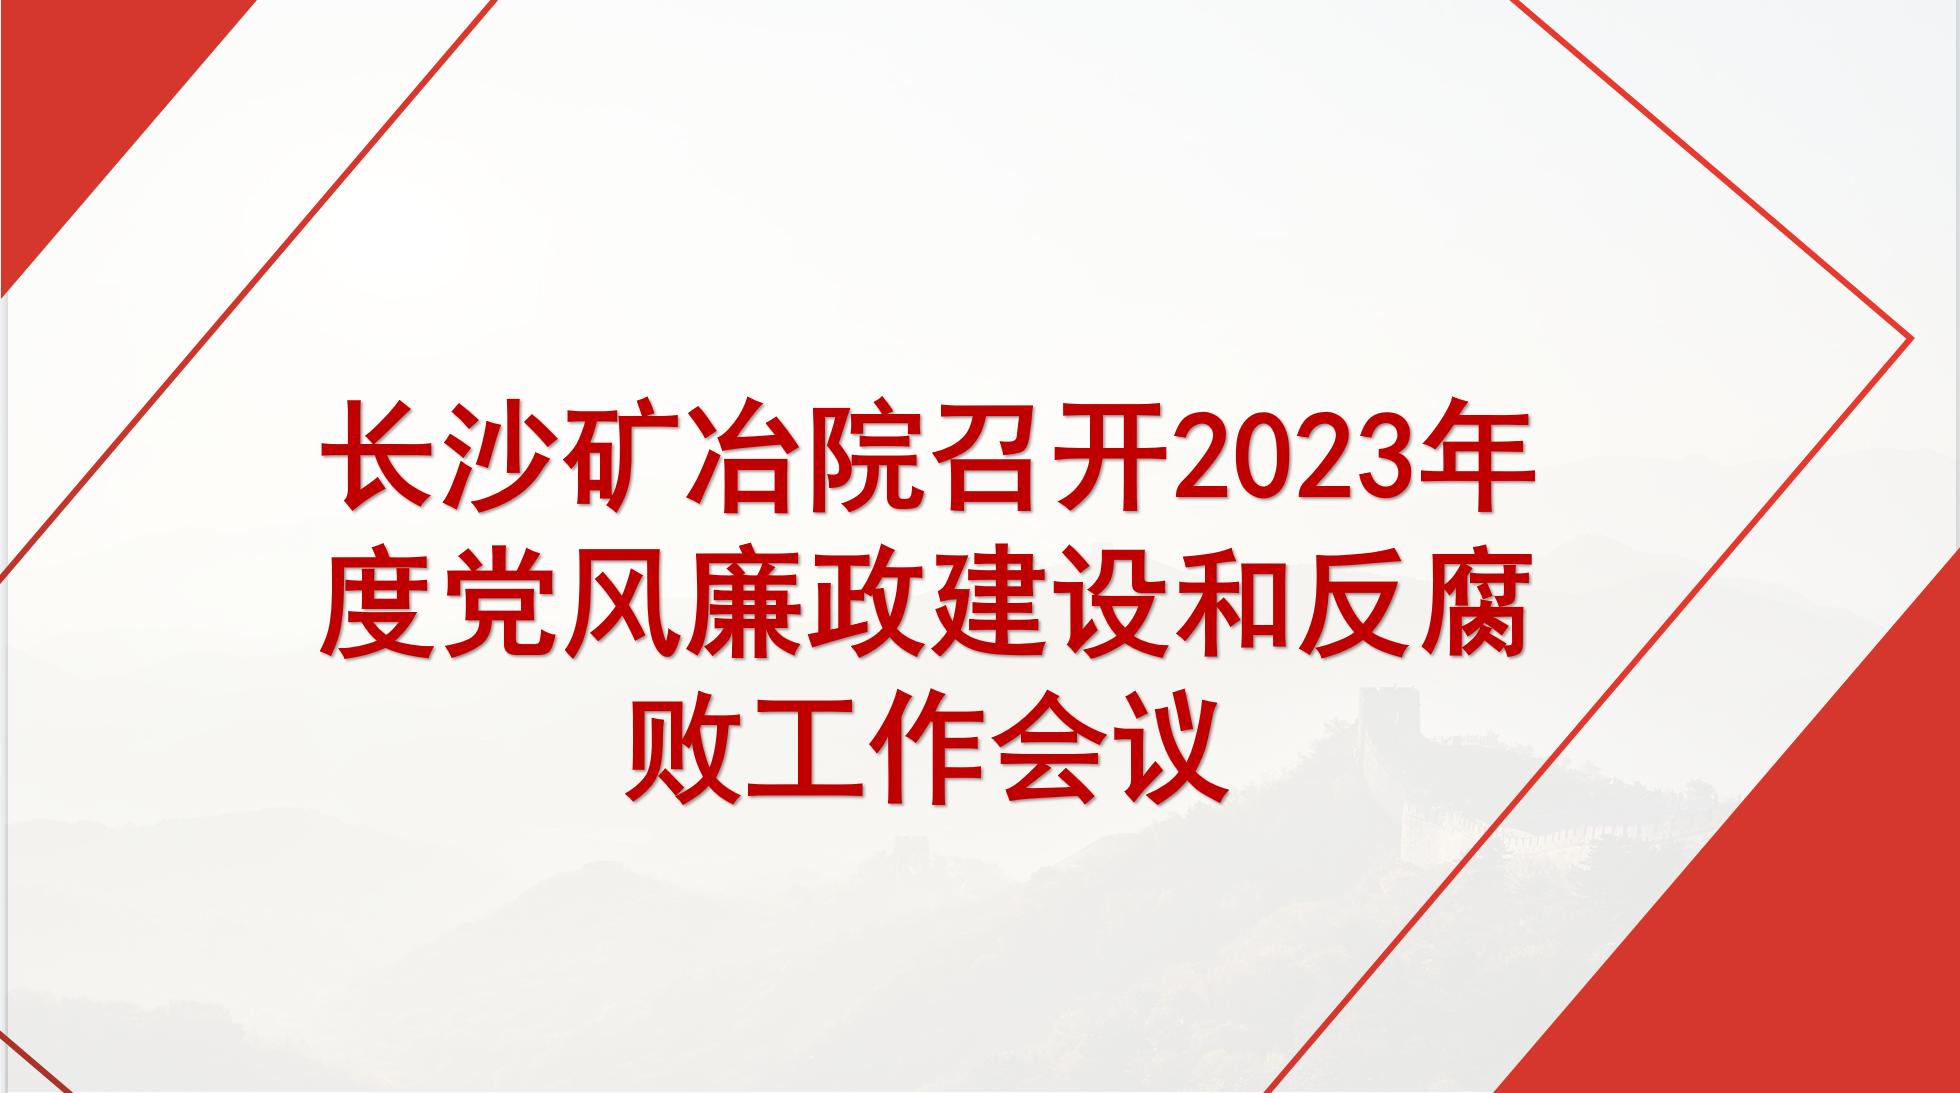 长沙矿冶院召开2023年度党风廉政建设和反腐败工作会议